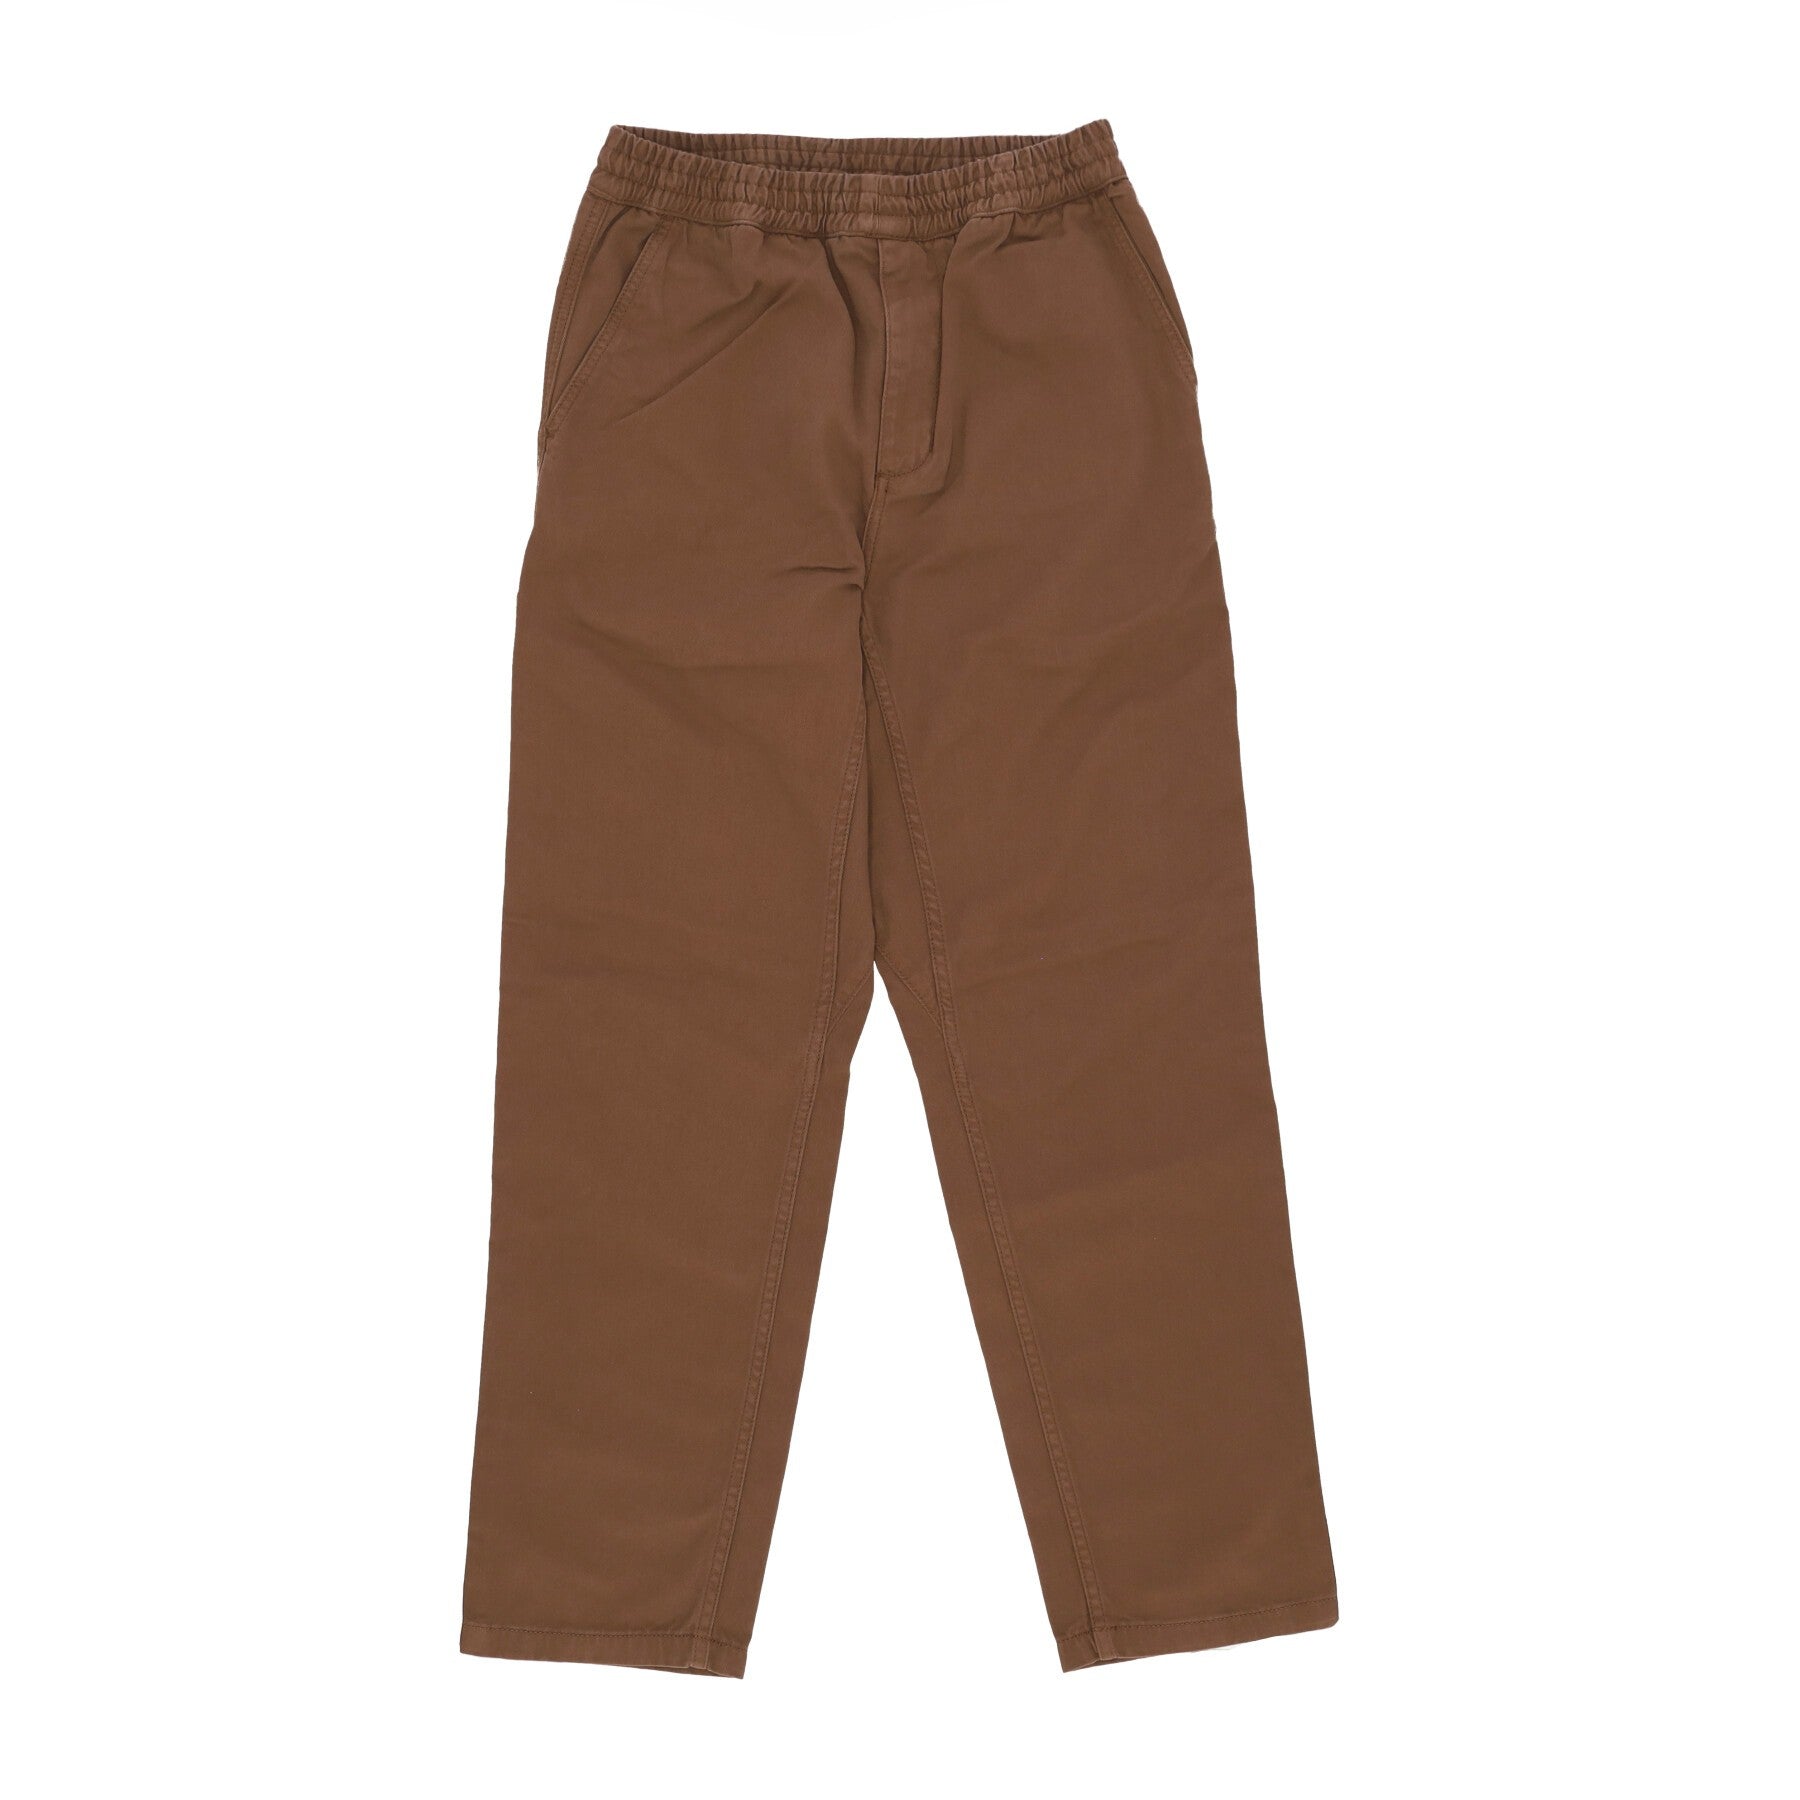 Pantalone Lungo Uomo Flint Pant Tamarind Garment Dyed I029919